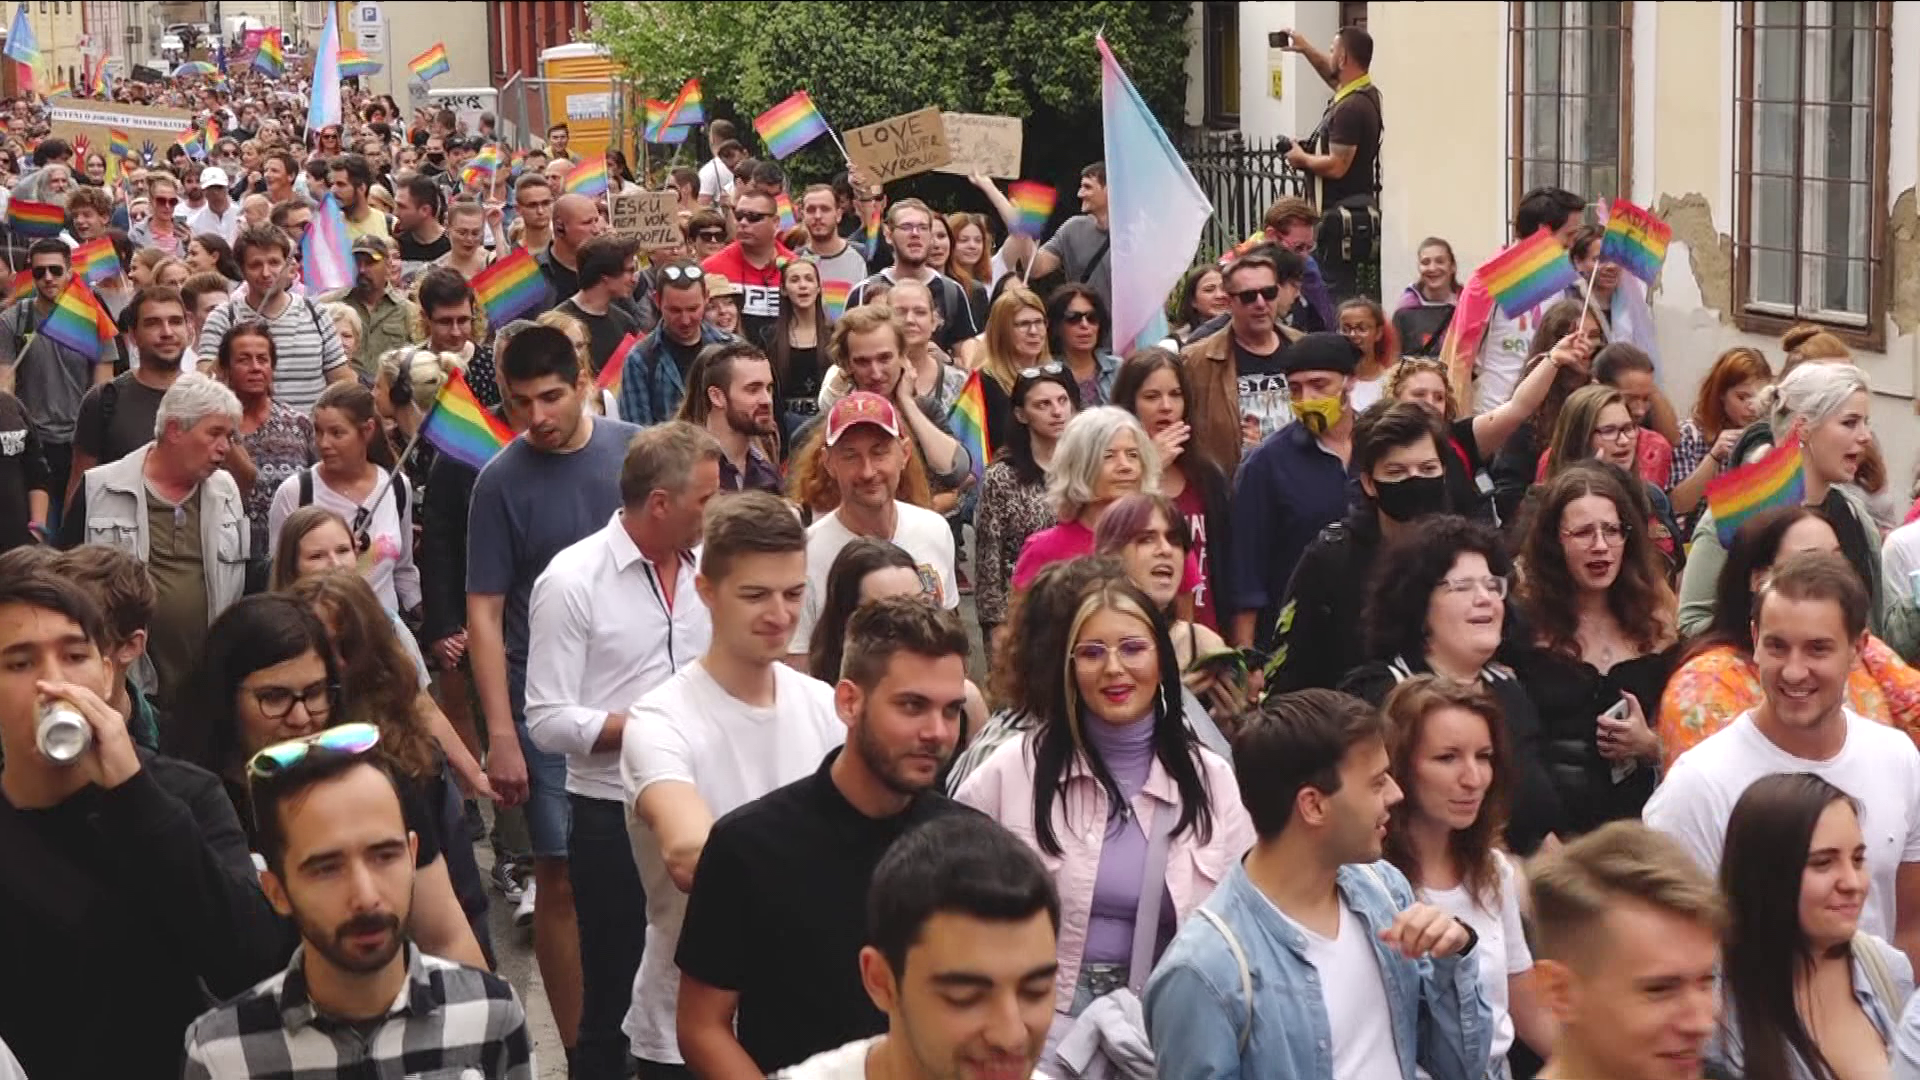 Feljelentést tett a Mi Hazánk politikusa a pécsi Pride miatt